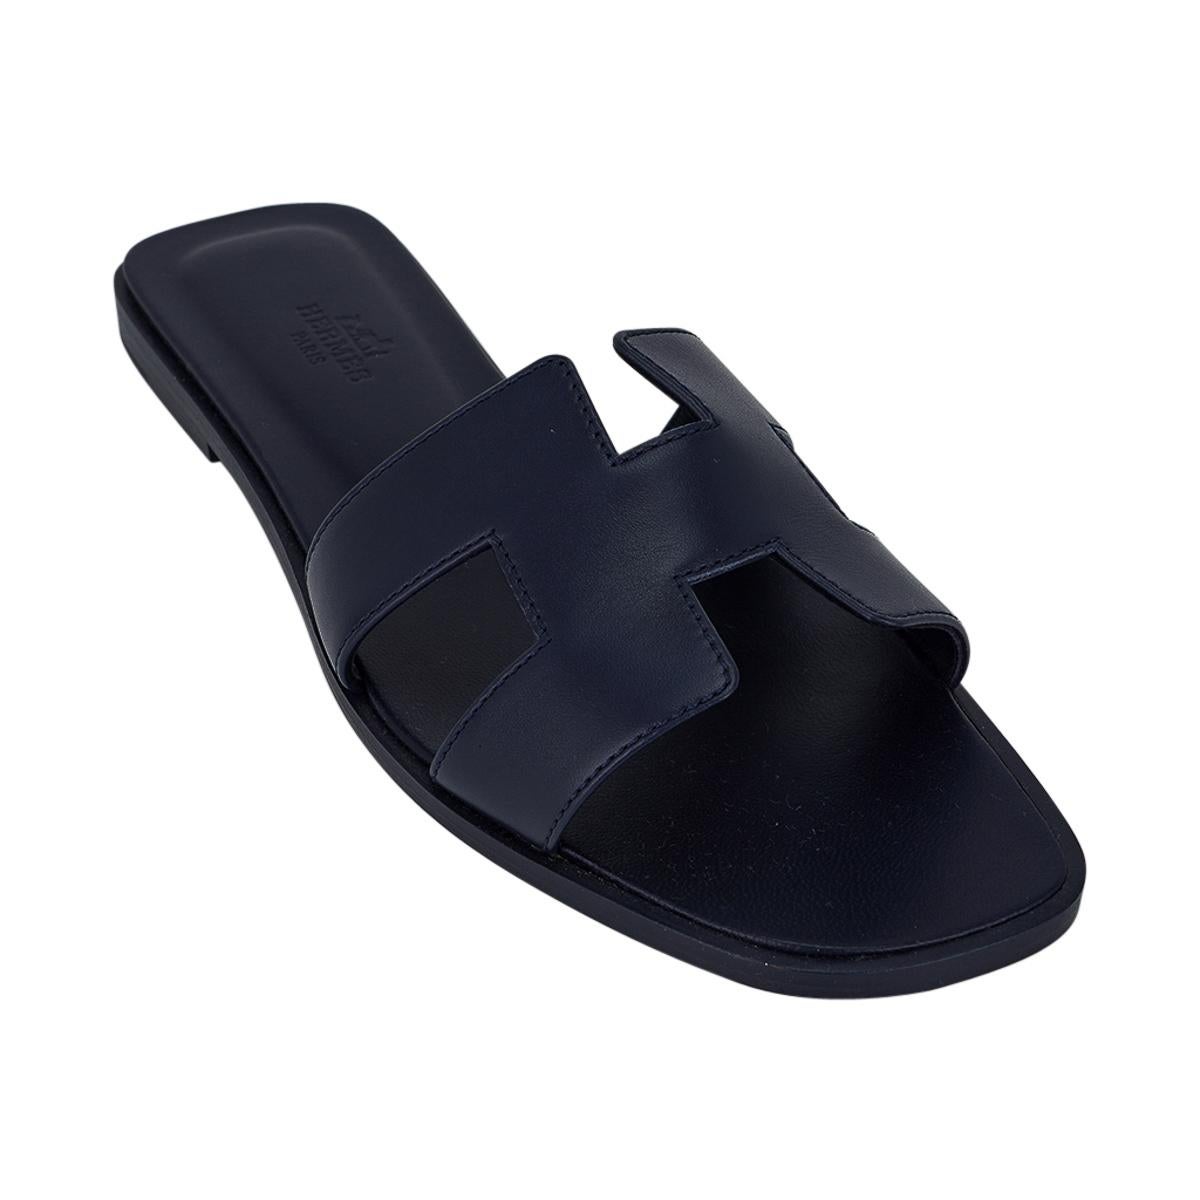 navy blue hermes sandals